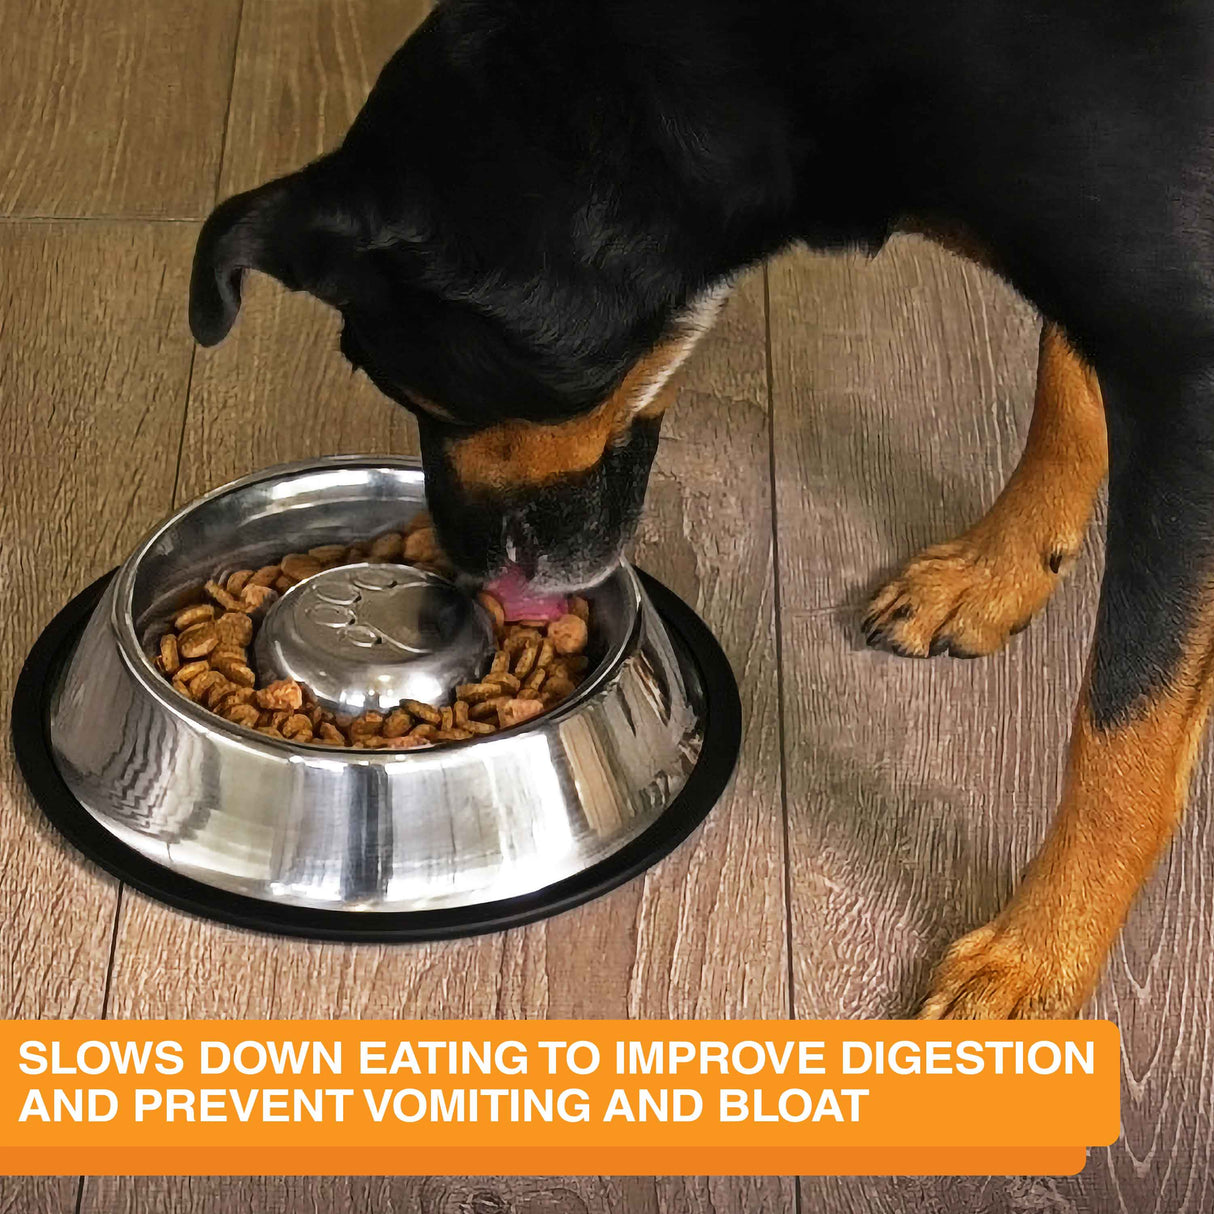 Pet Mat with Non-Slip Backing, Dog Food Bowl Mat, Four Decorative